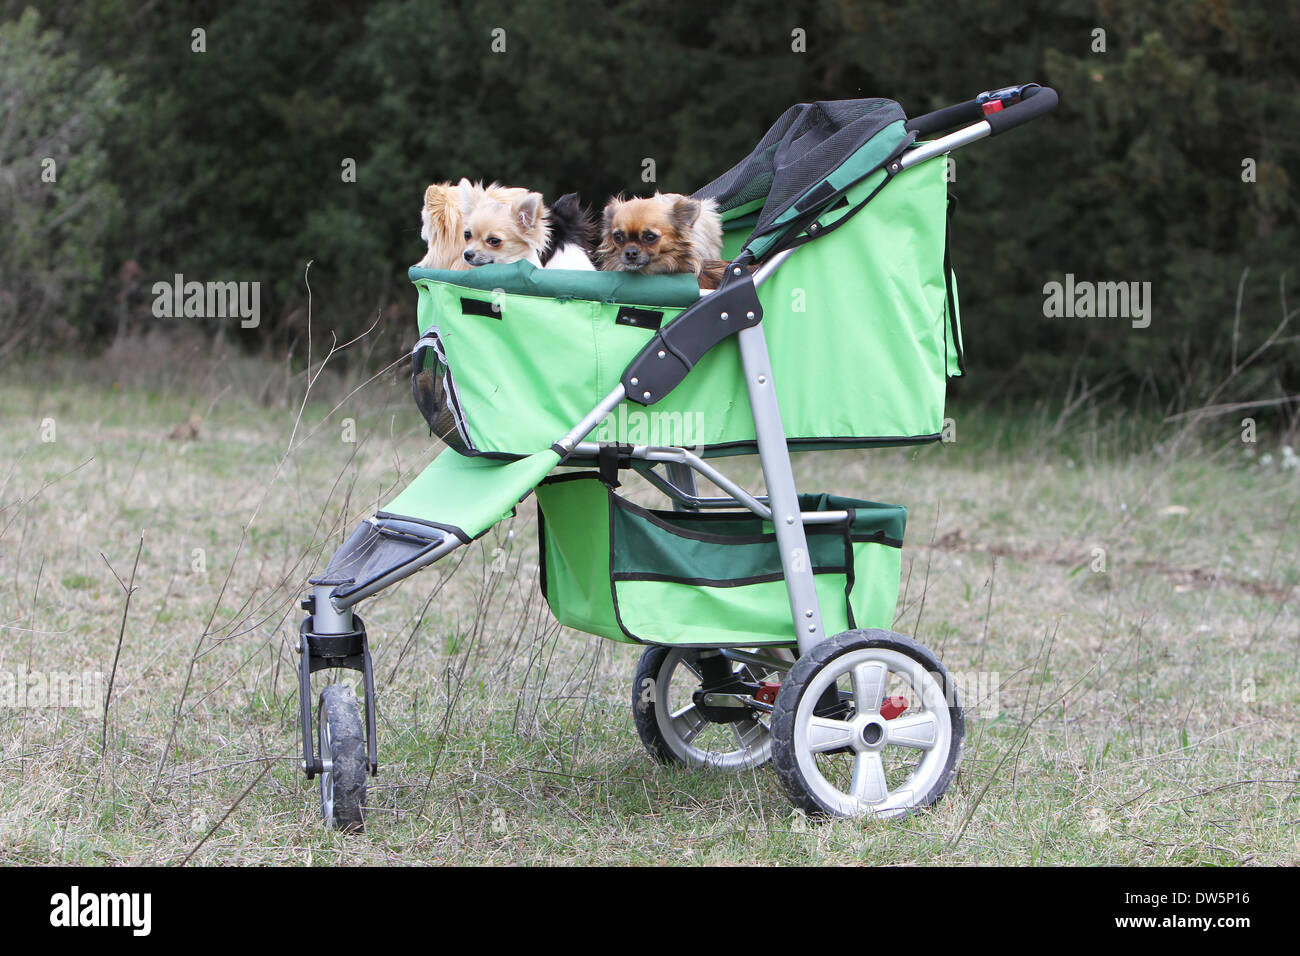 Chihuahua Hund / mehrere Erwachsene in einem Kinderwagen für Hund  Stockfotografie - Alamy